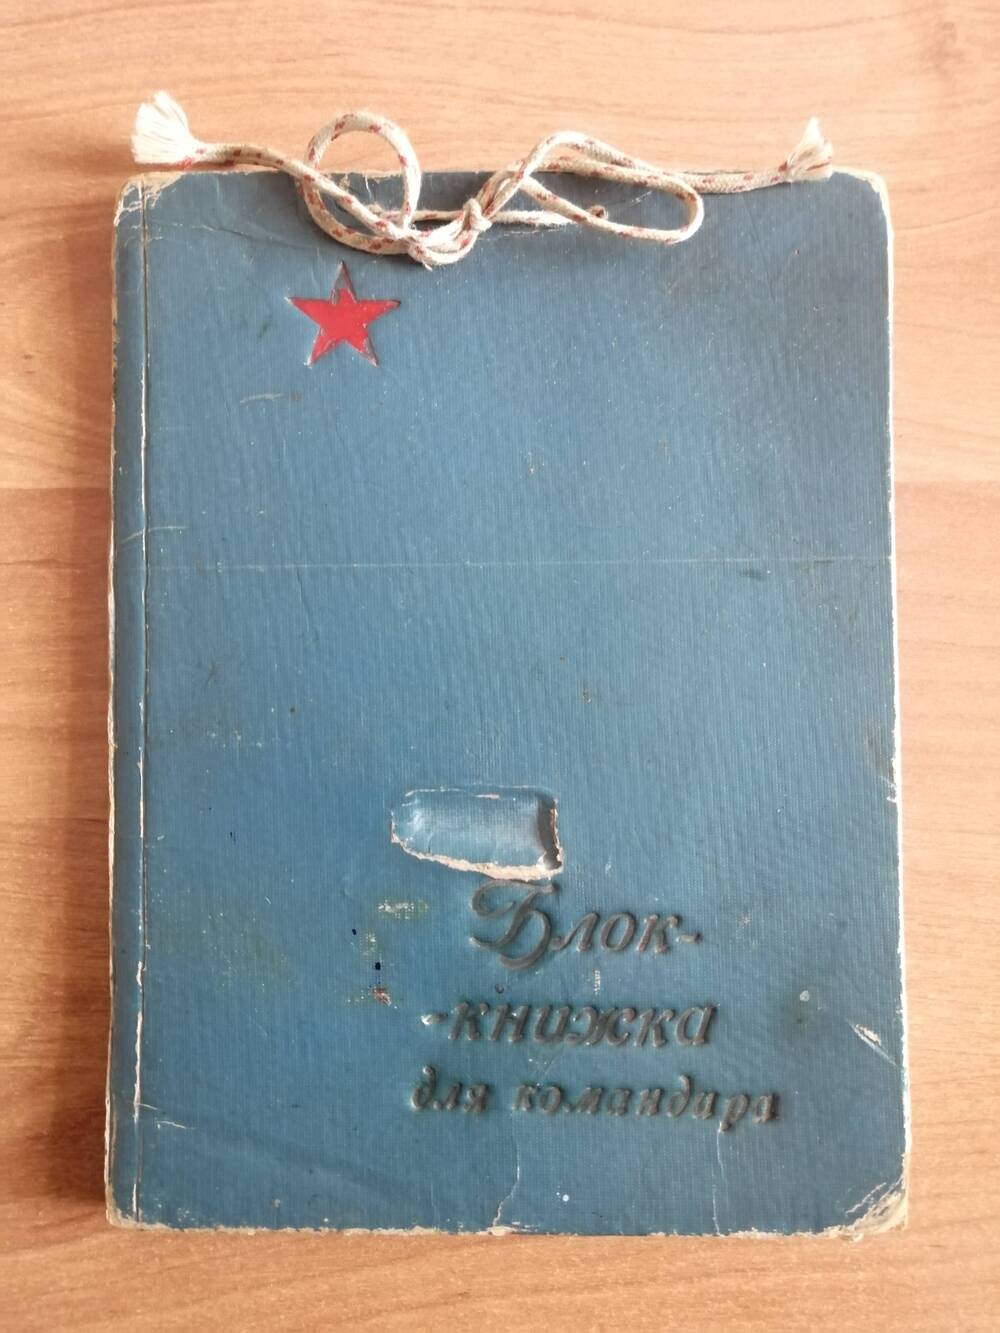 Блок-книжка для командира, где Смирнова Валентина Александровна записывала адреса